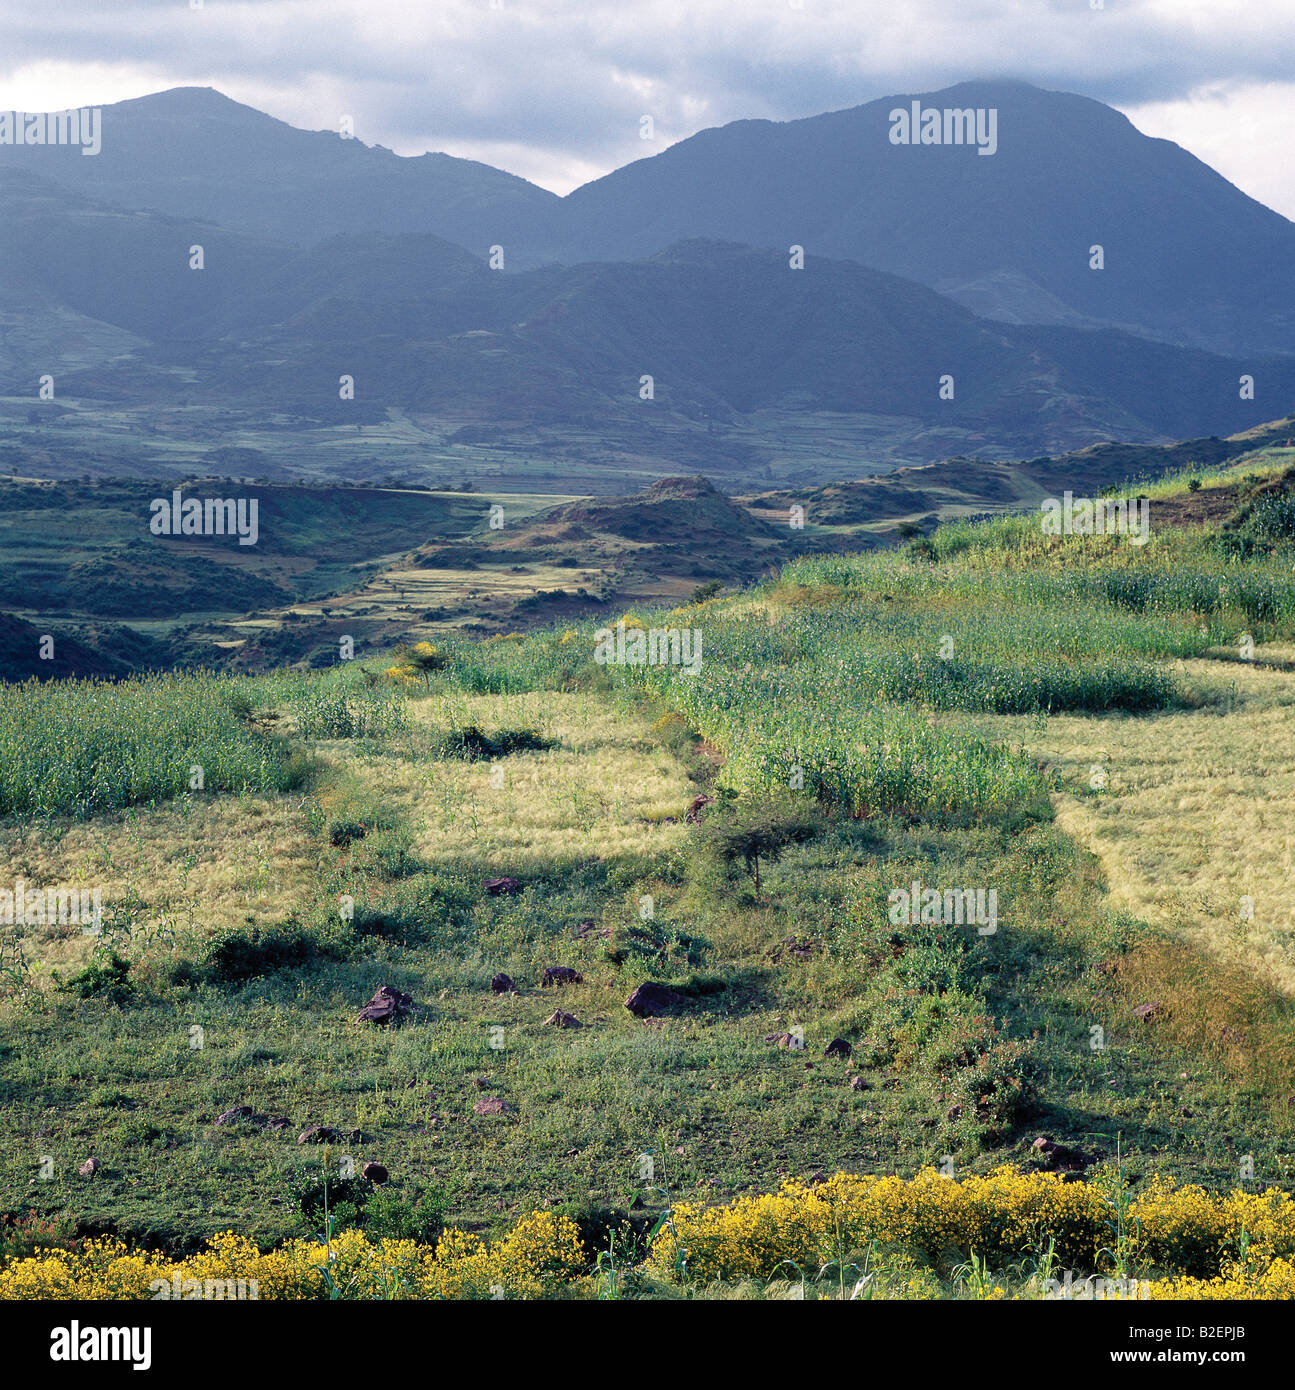 Una vista di spettacolari catene montuose tra Senbete e Kombolcha. L'Etiopia è un paese di grandi orizzonti e lo scenario spettacolare. Foto Stock